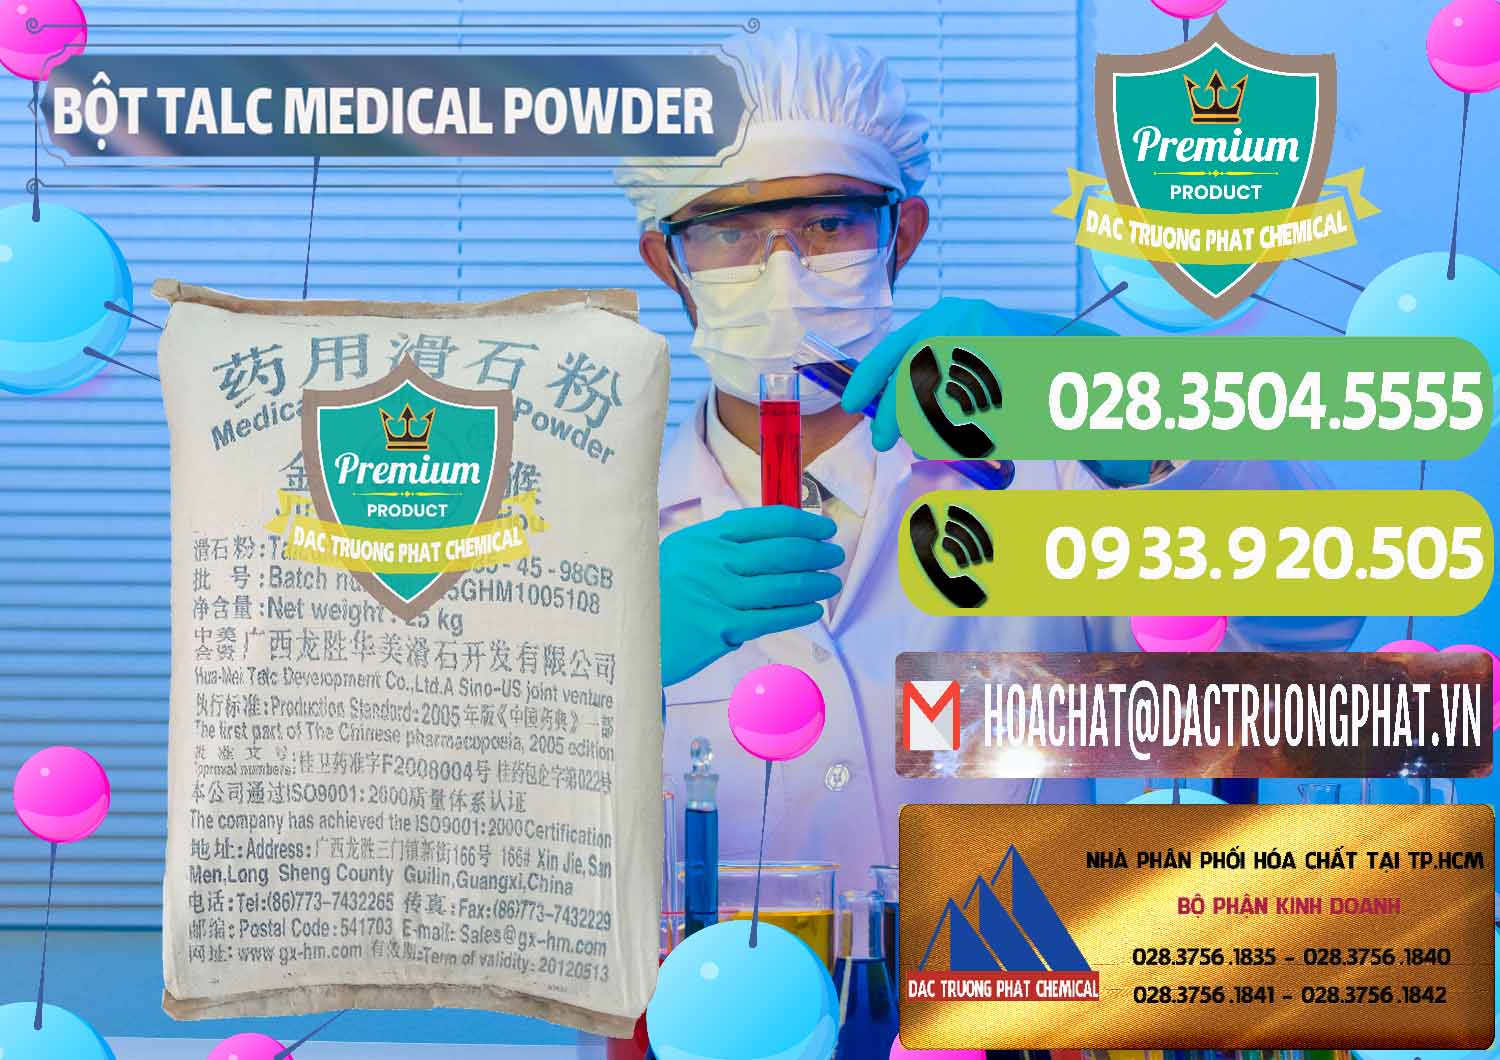 Cty kinh doanh - bán Bột Talc Medical Powder Trung Quốc China - 0036 - Cty chuyên phân phối & cung ứng hóa chất tại TP.HCM - hoachatmientay.vn